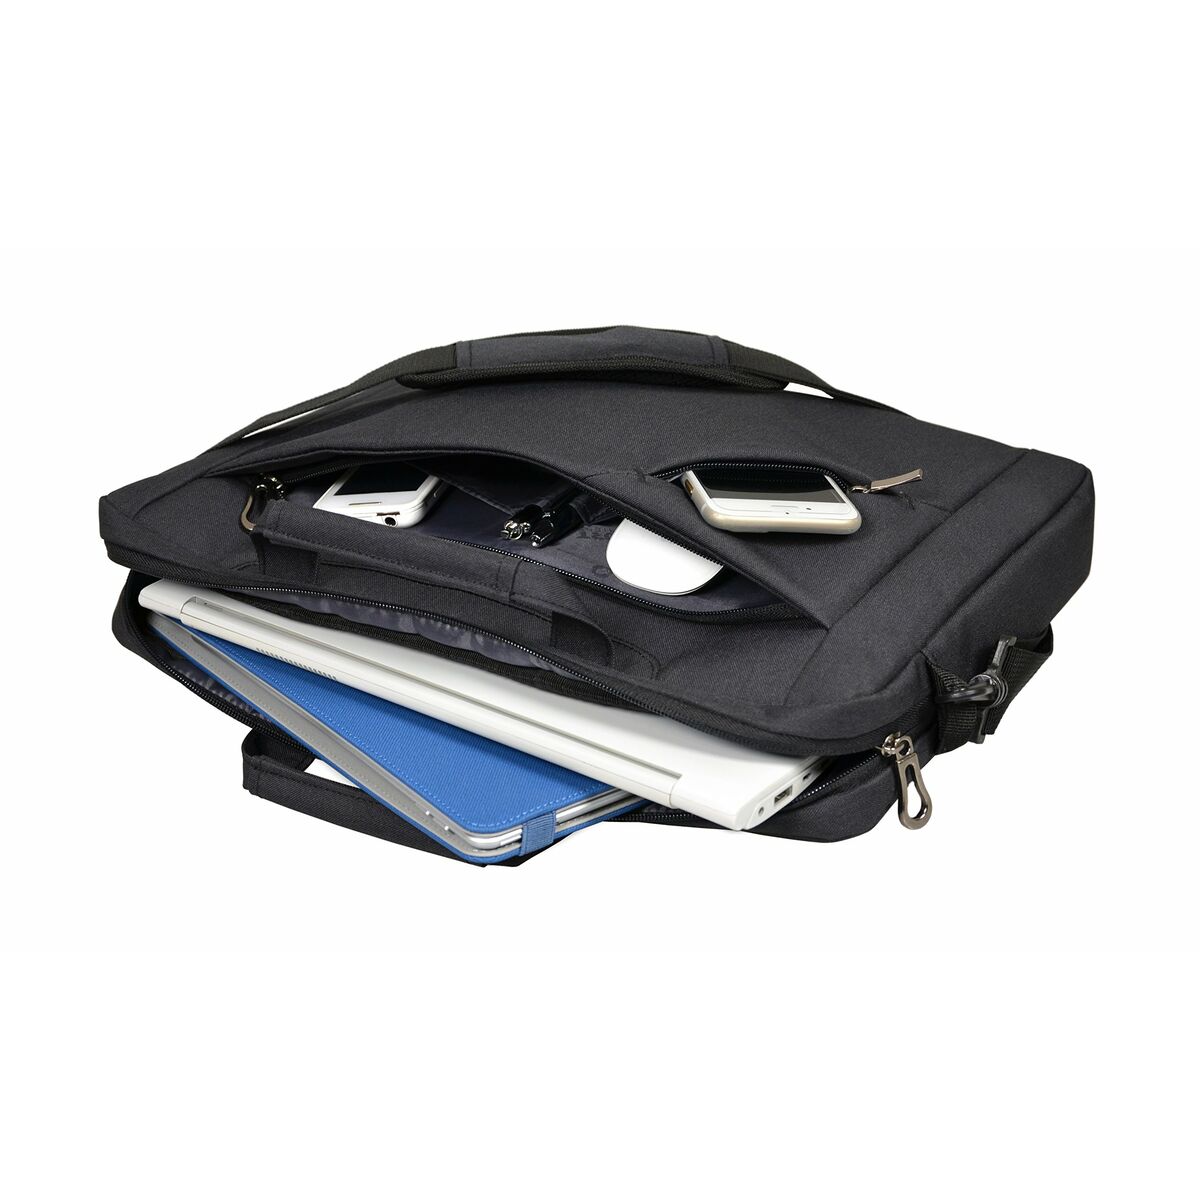 Laptop Case Port Designs 135172 Black 15,6" 43 x 23,5 x 7 cm